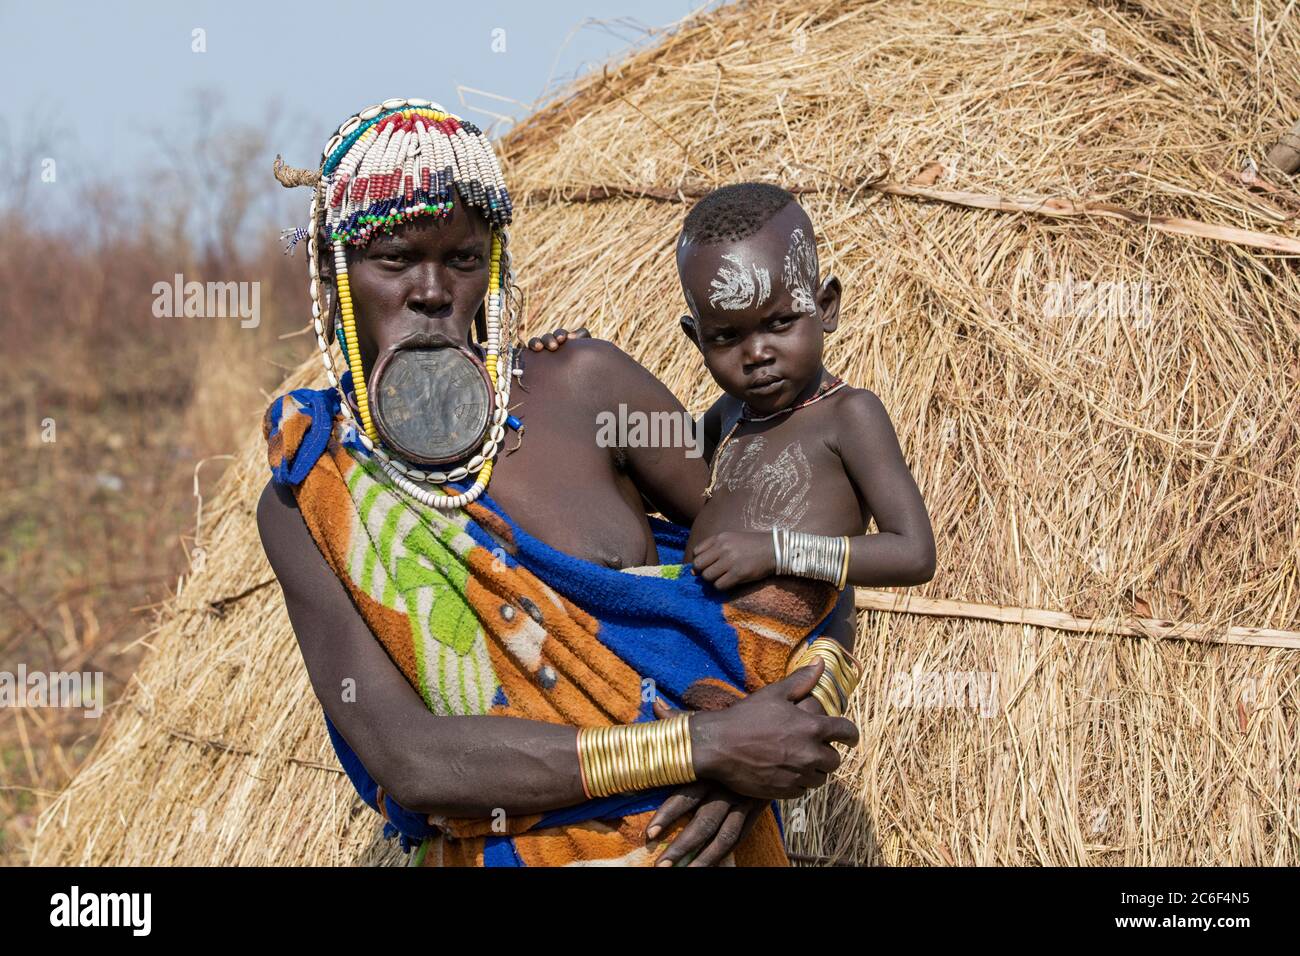 Femme noire avec enfant de la tribu Mursi portant une plaque à lèvres et des perles dans le parc national de Mago près de Jinka, zone de Debub Omo, sud de l'Éthiopie, Afrique Banque D'Images